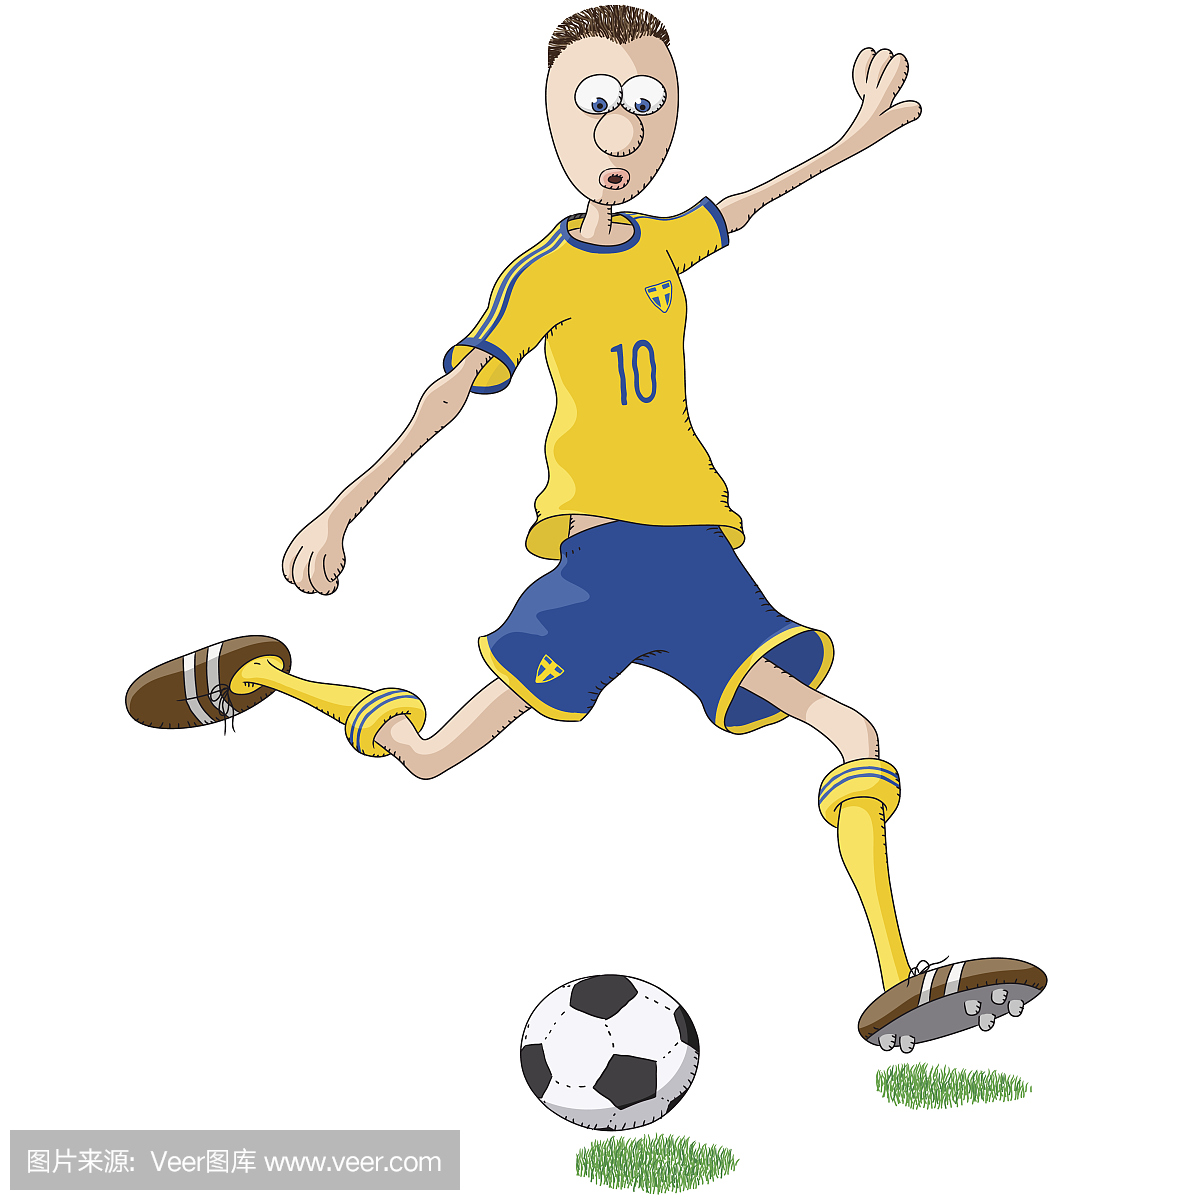 足球运动员与黄色衬衫和蓝色短裤